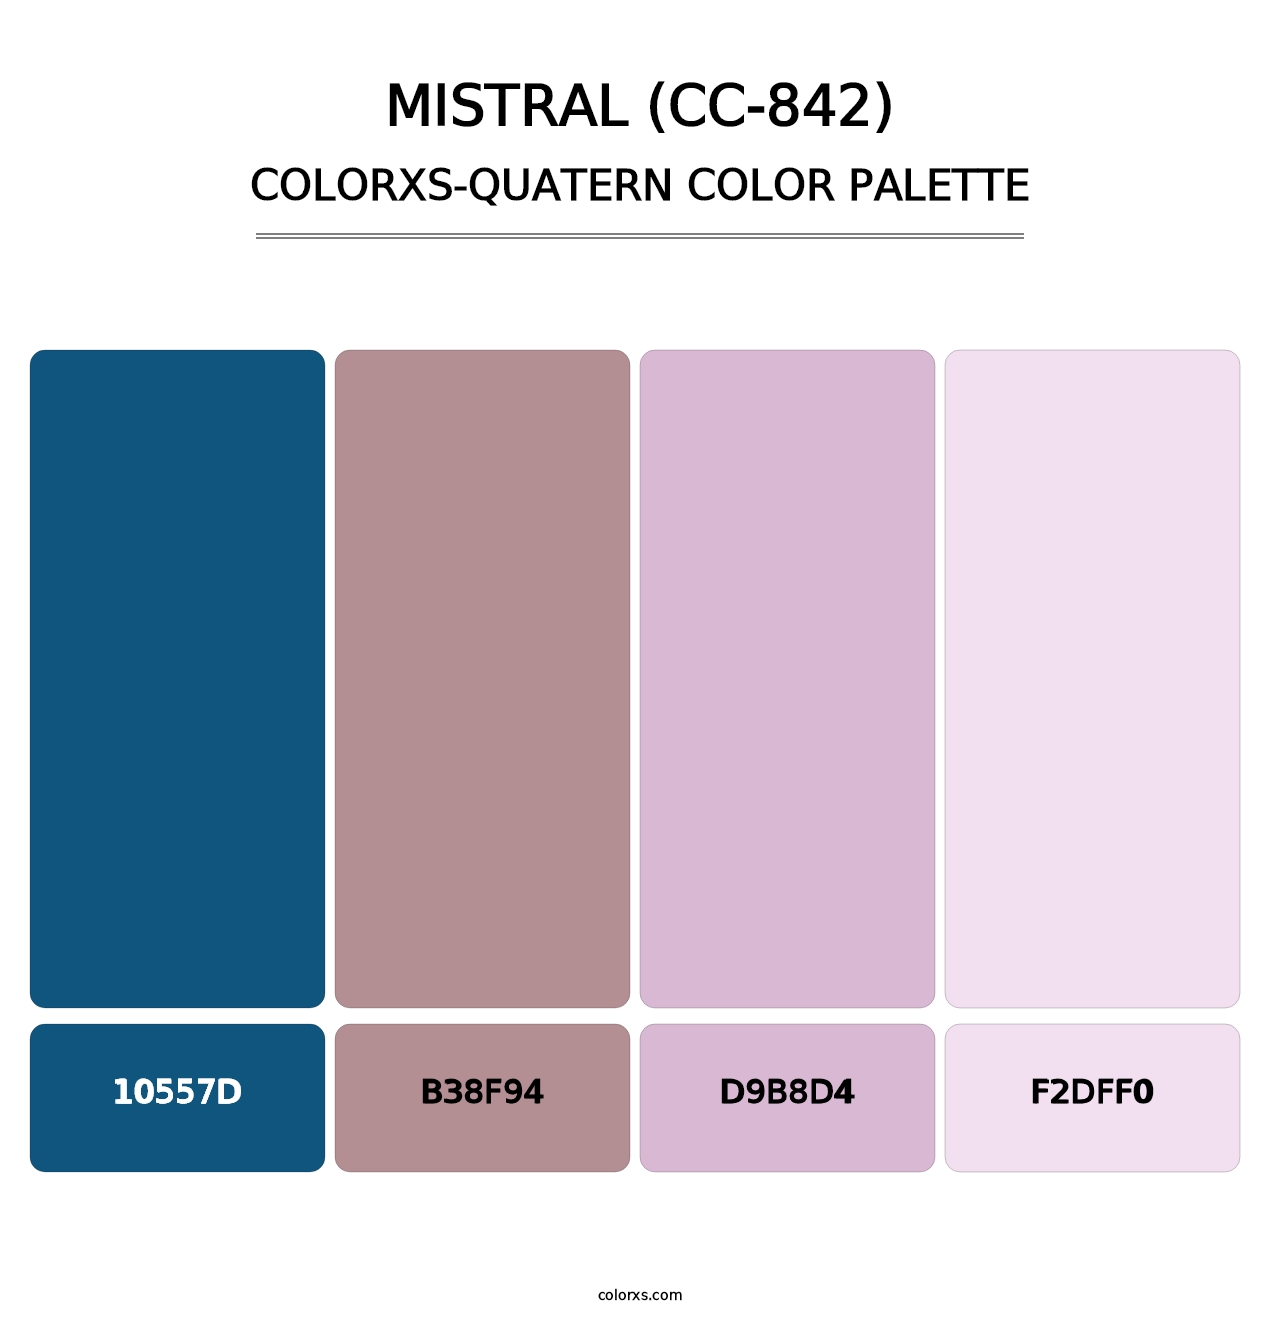 Mistral (CC-842) - Colorxs Quatern Palette